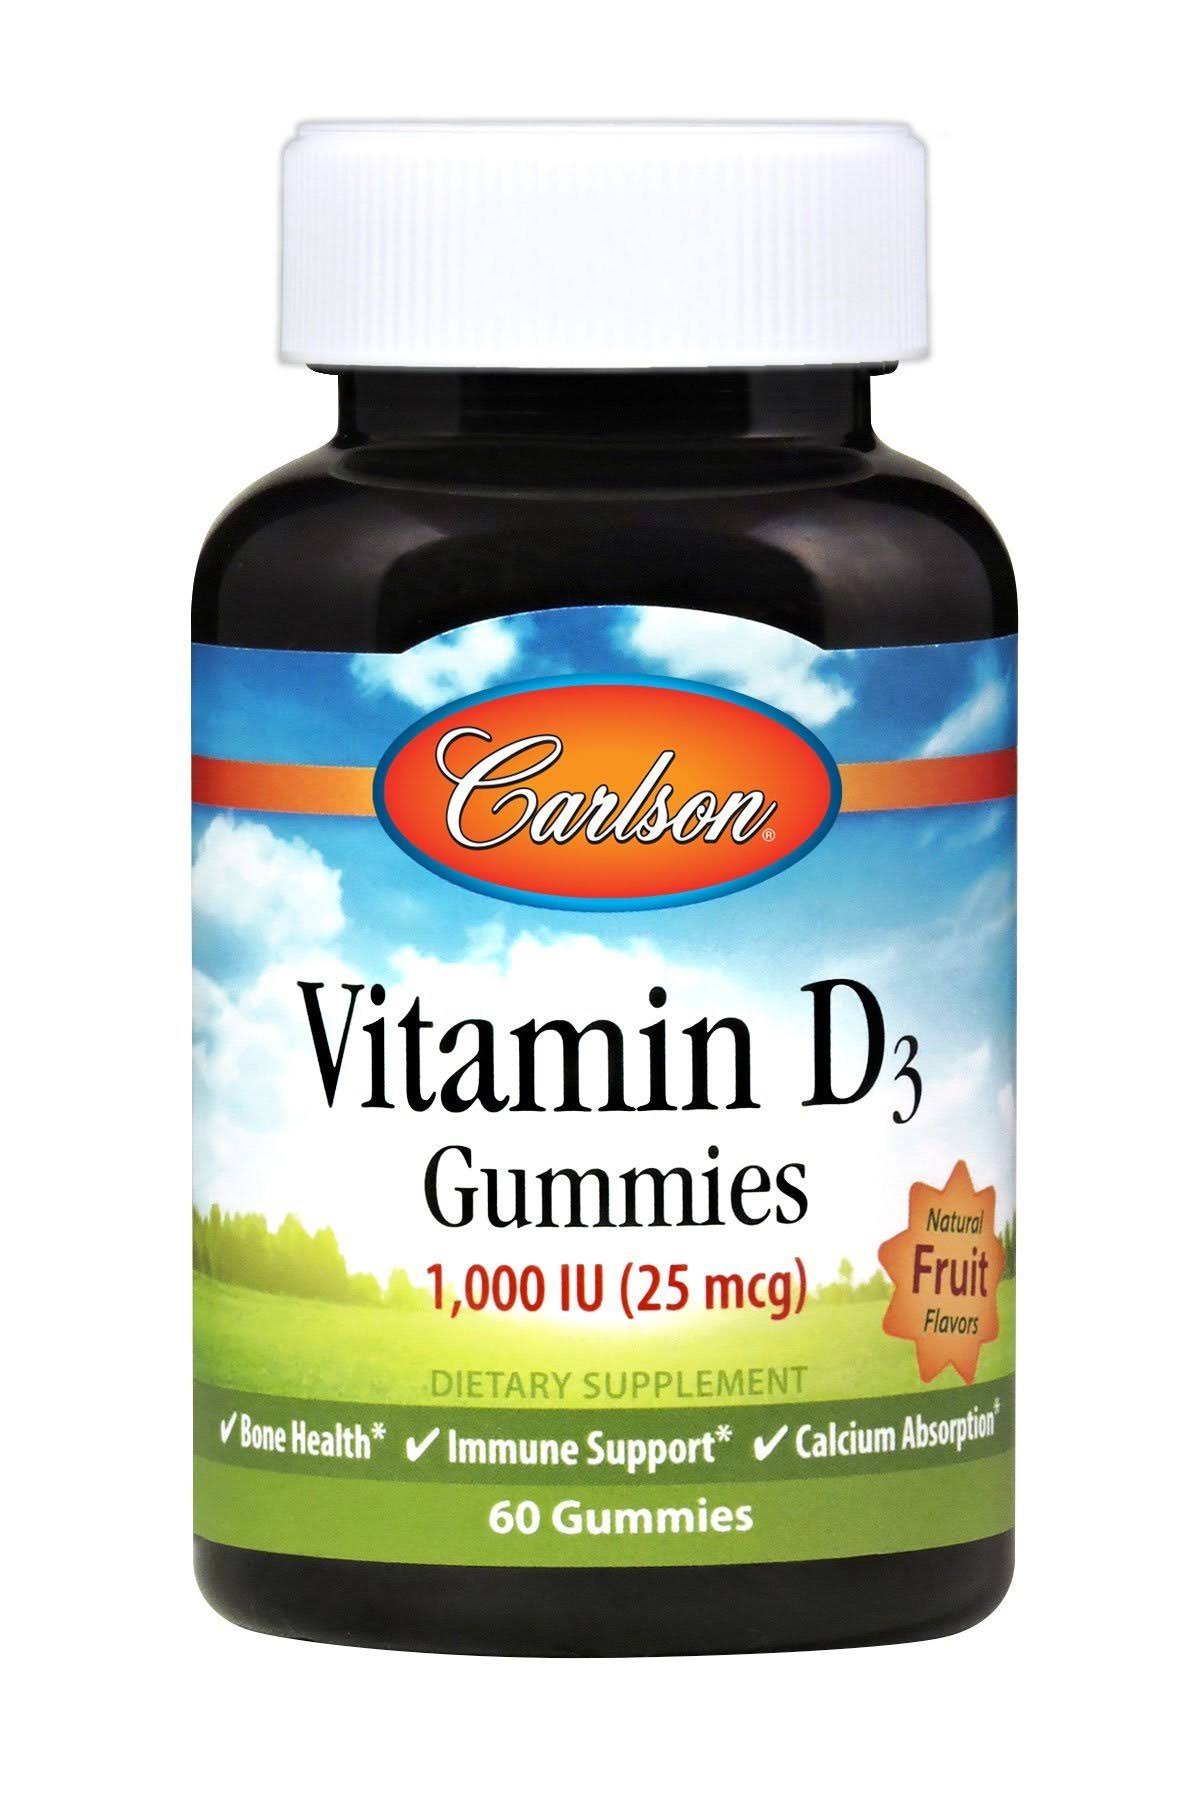 Carlson Vitamin D3, Natural Fruit Flavors, Gummies - 60 gummies